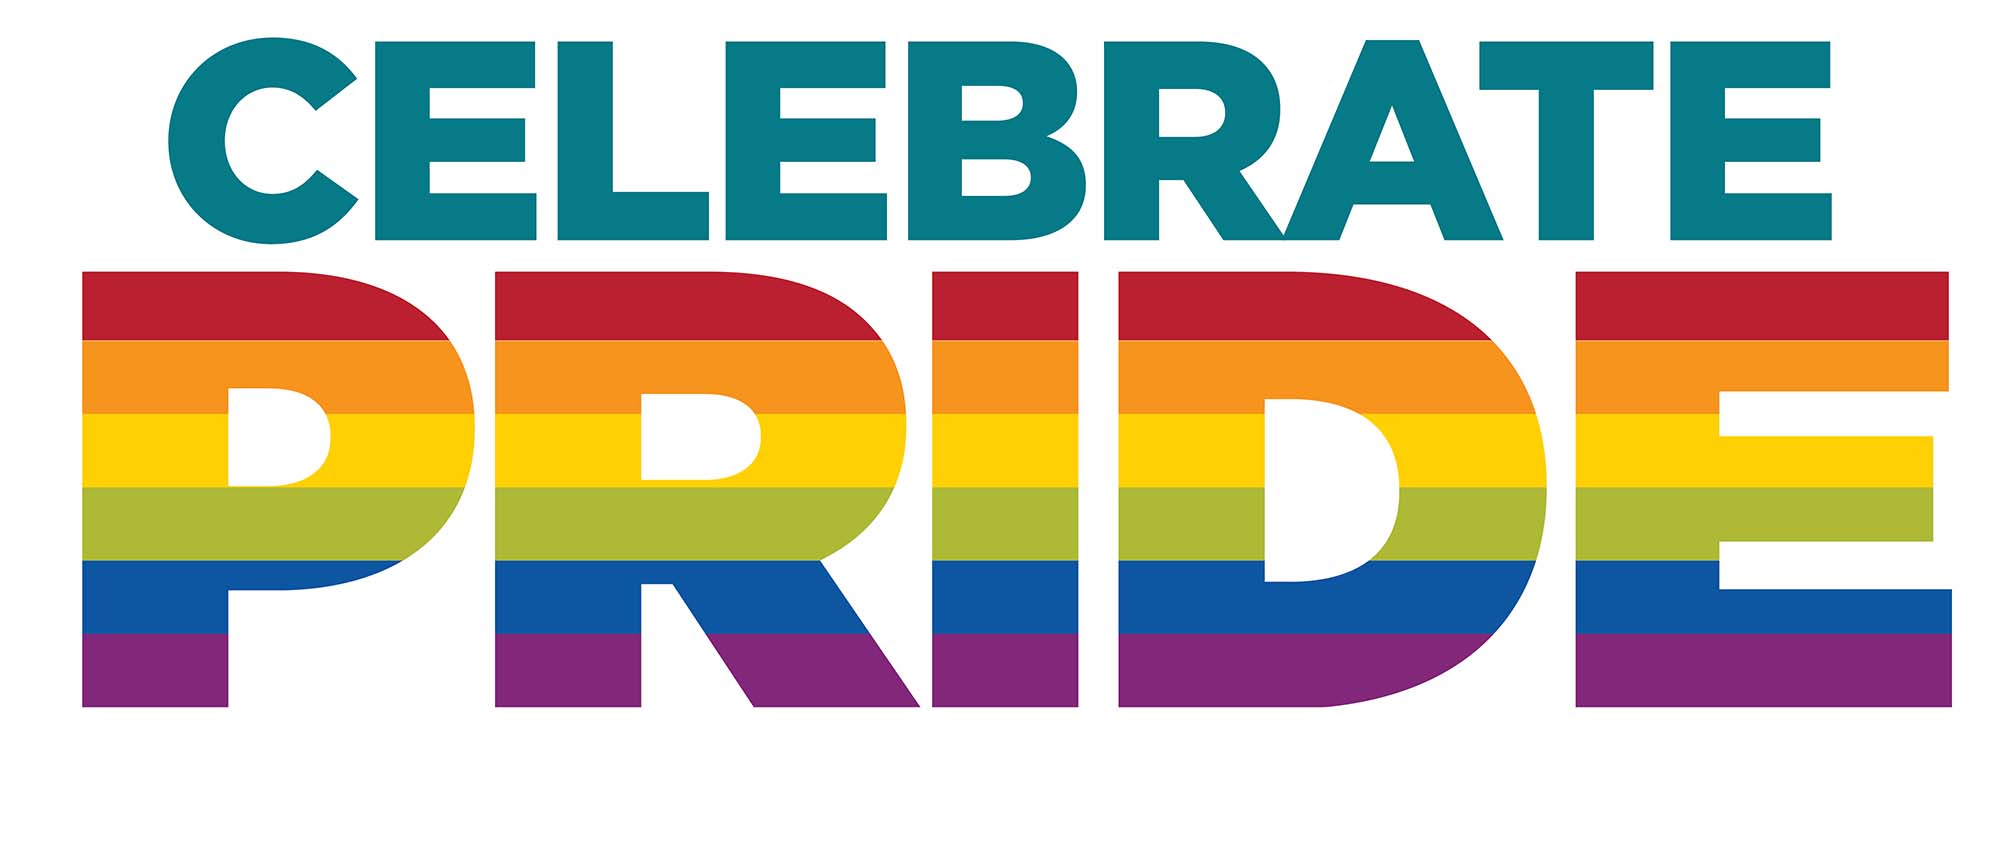 Grafica UNM che dice "Celebrate Pride" con orgoglio colorato come un arcobaleno